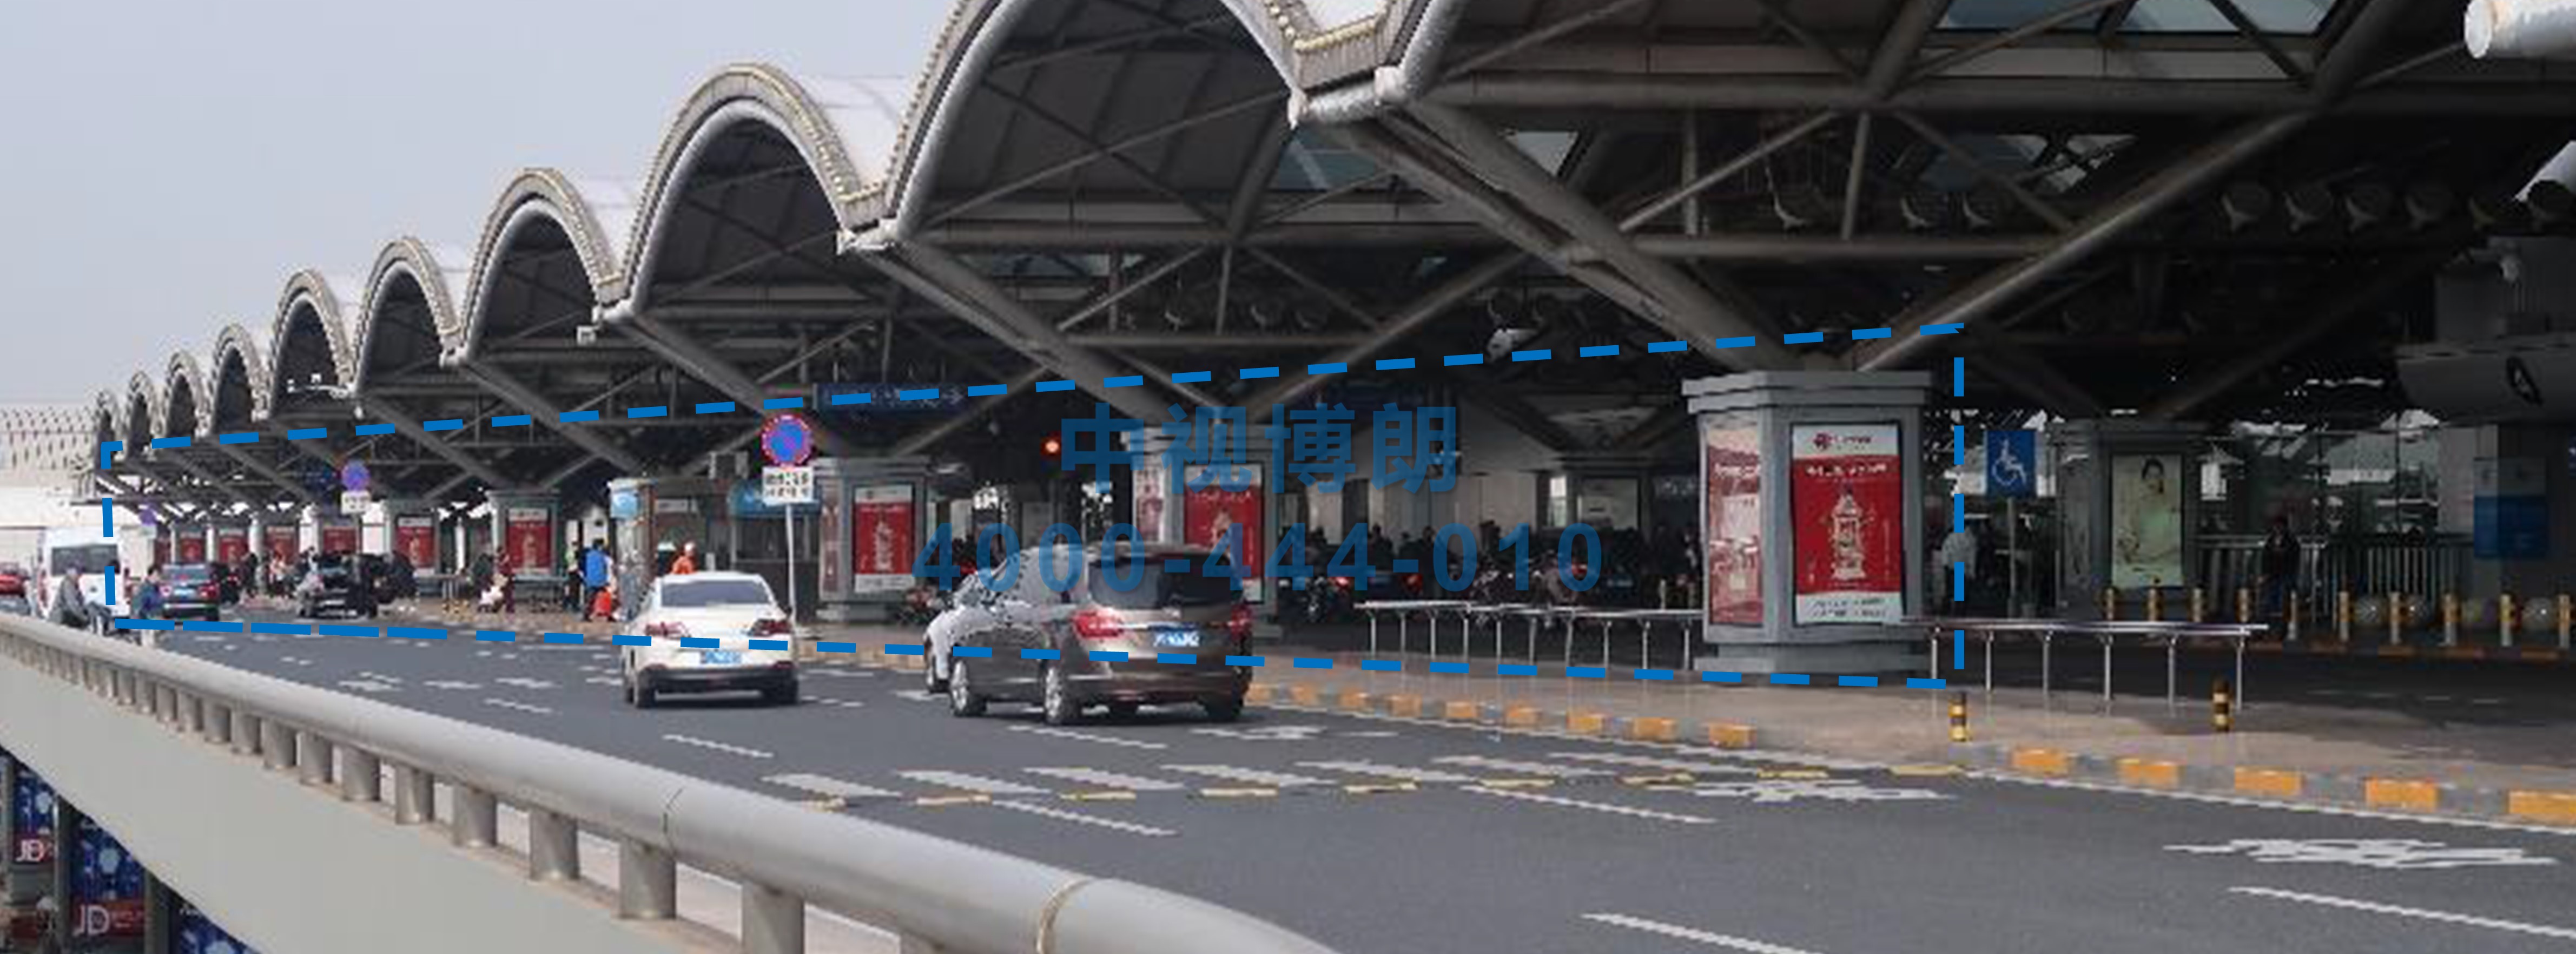 北京首都机场广告-T2 Entrance and Exit 13 Row Packed Column Light Boxes